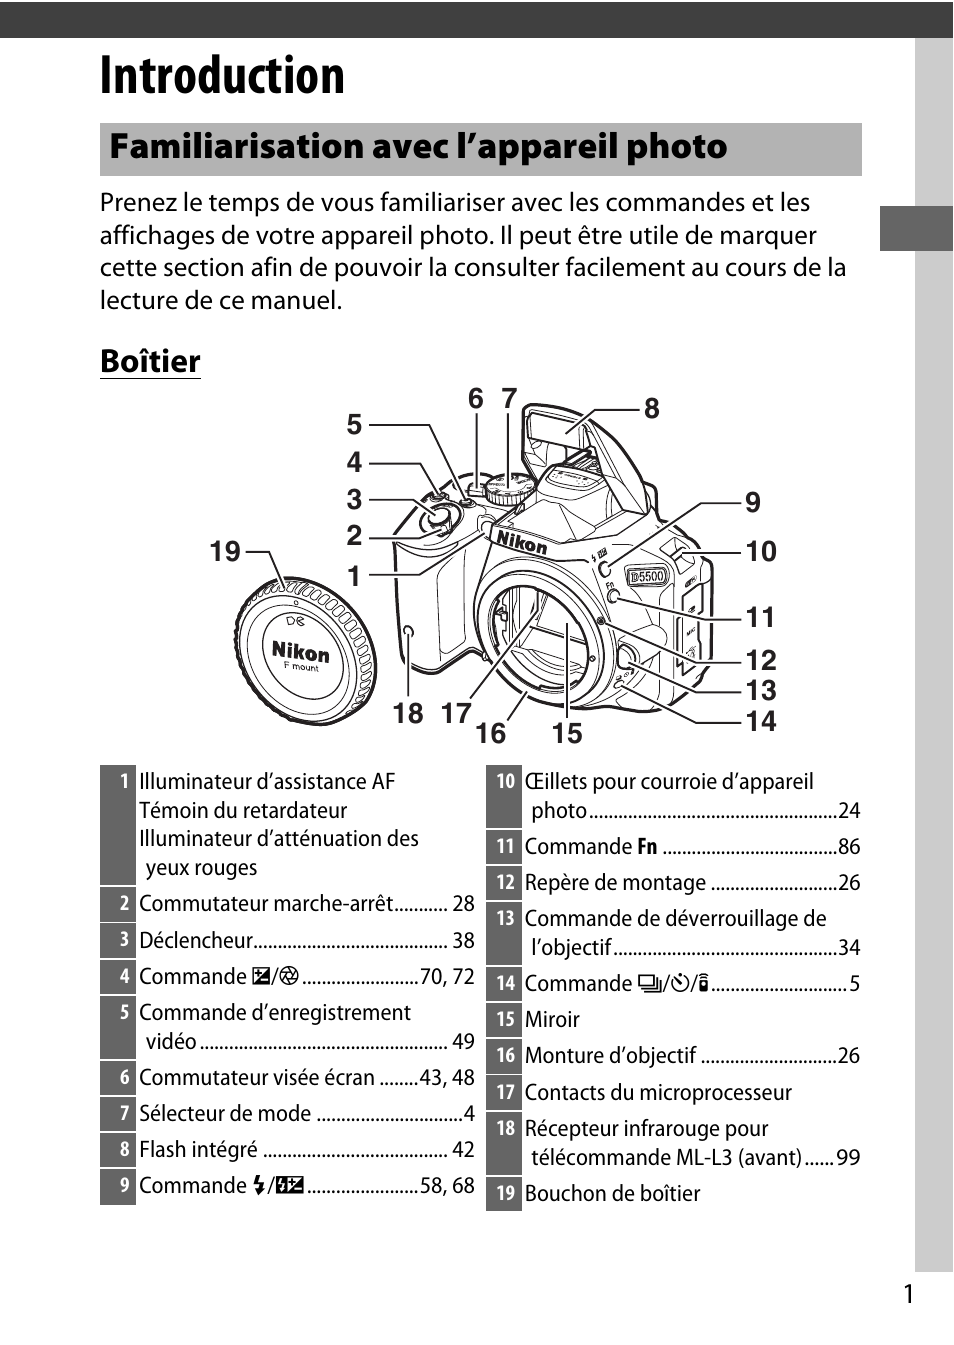 Introduction, Familiarisation avec l’appareil photo, Boîtier | Nikon D5500 Manuel d'utilisation | Page 23 / 156